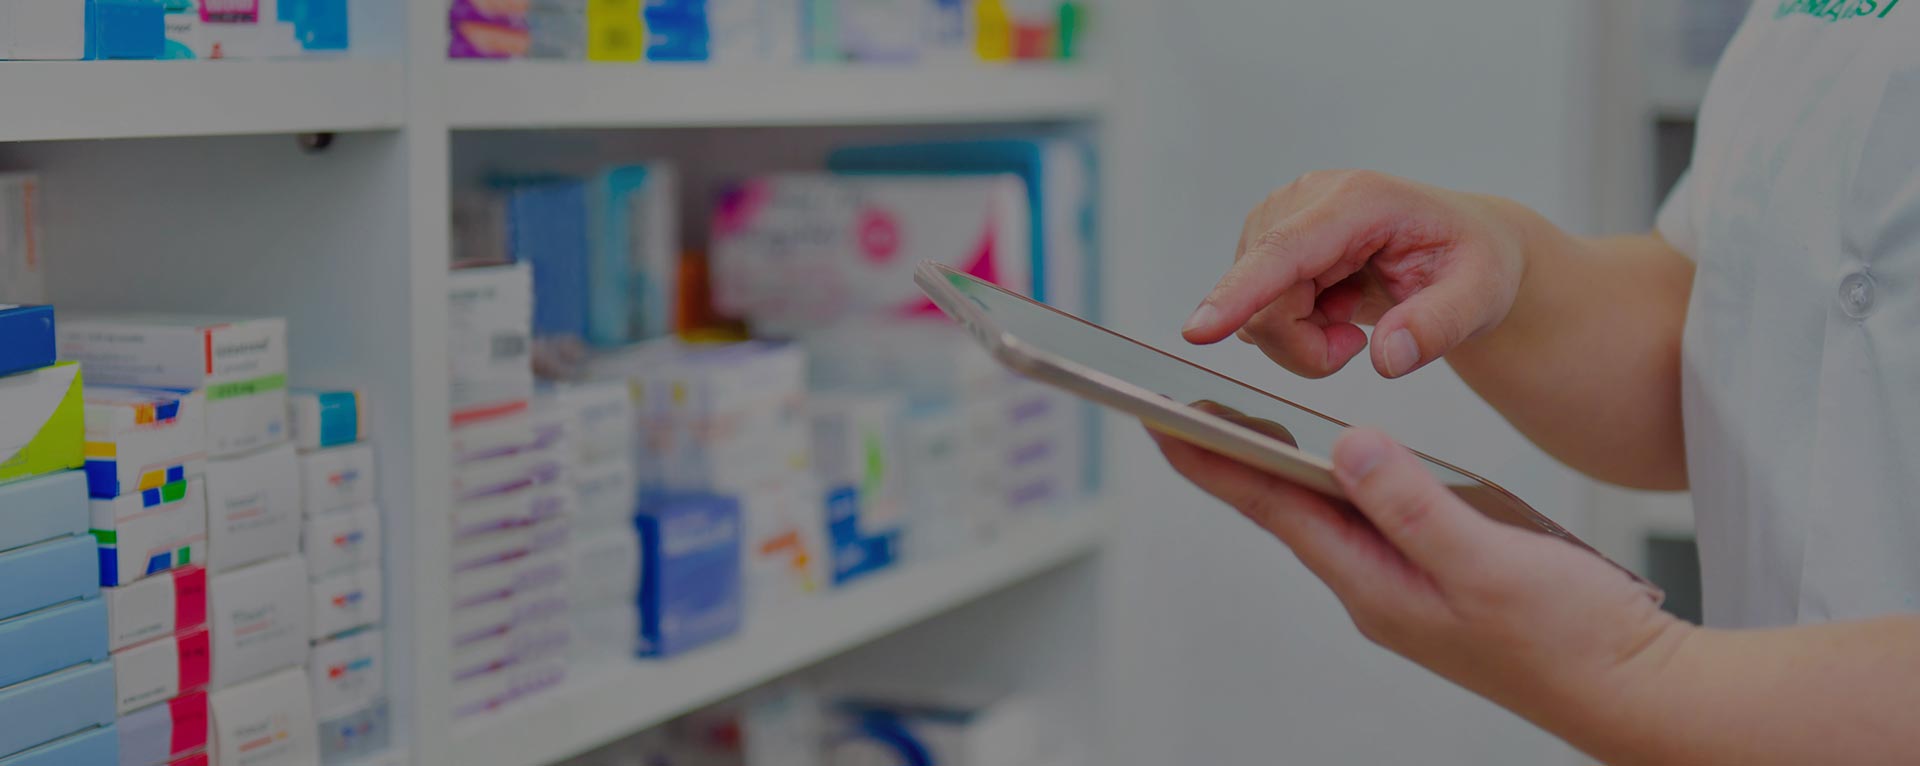 Farmacie online: quali sono i prodotti piú venduti?